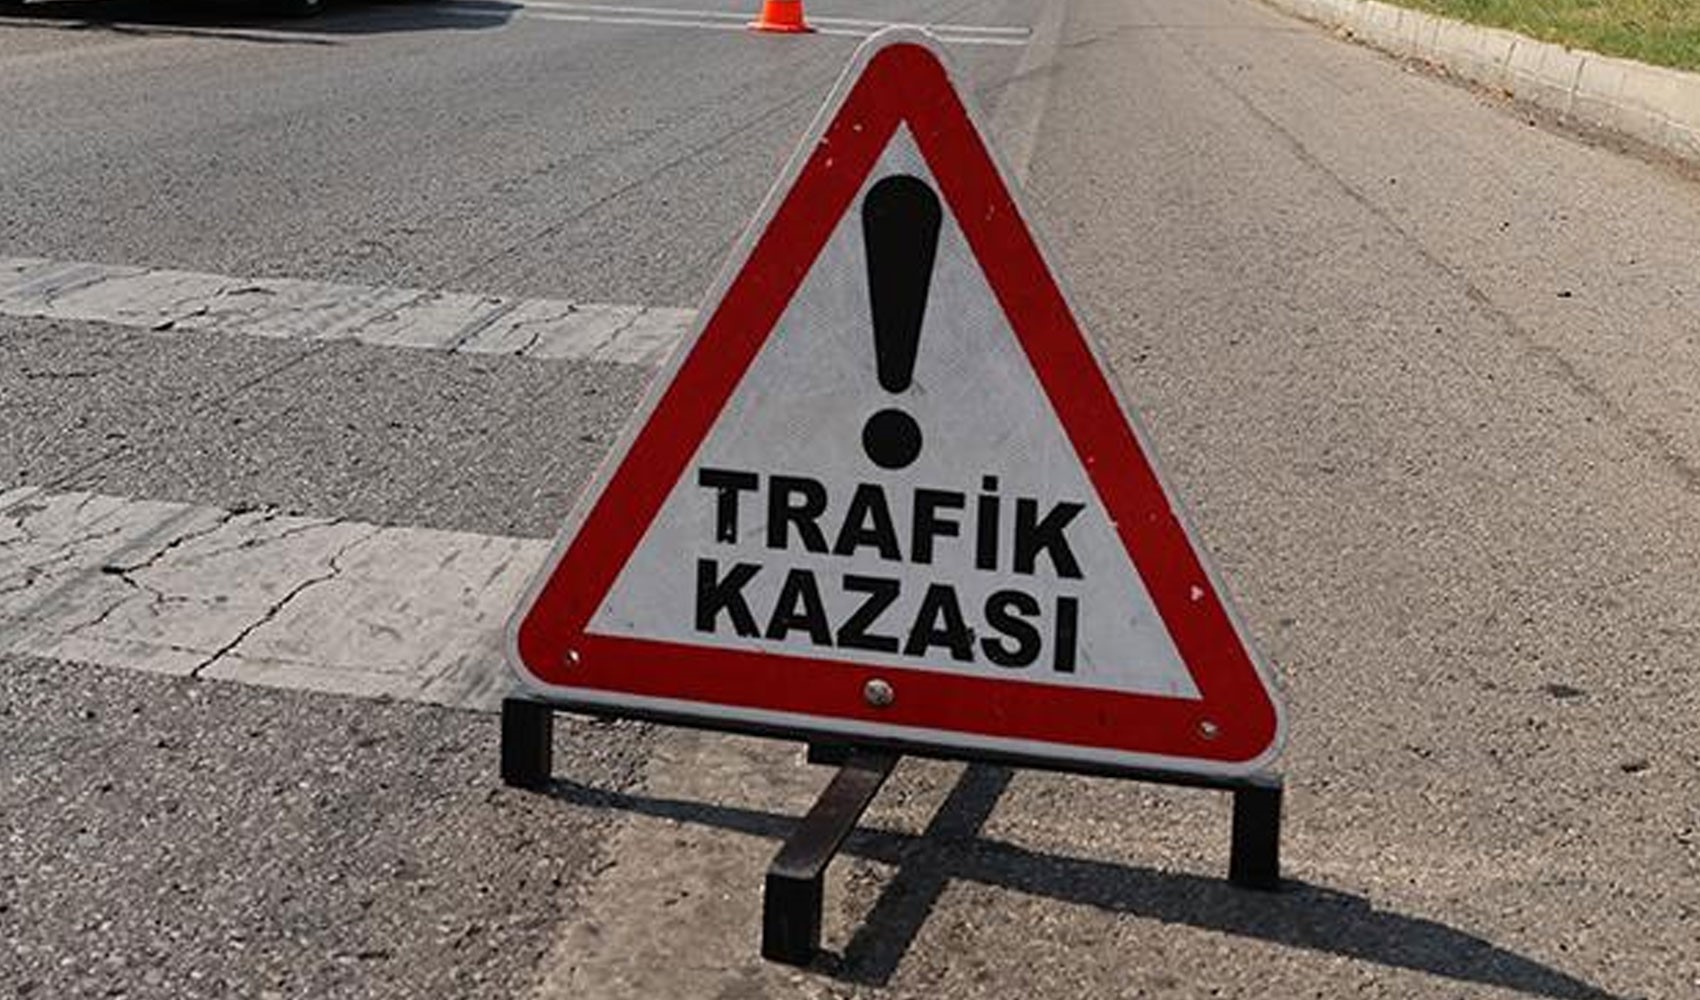 Bursa'da katliam gibi kaza: İki otomobil çarpıştı, çok sayıda ölü ve yaralı var